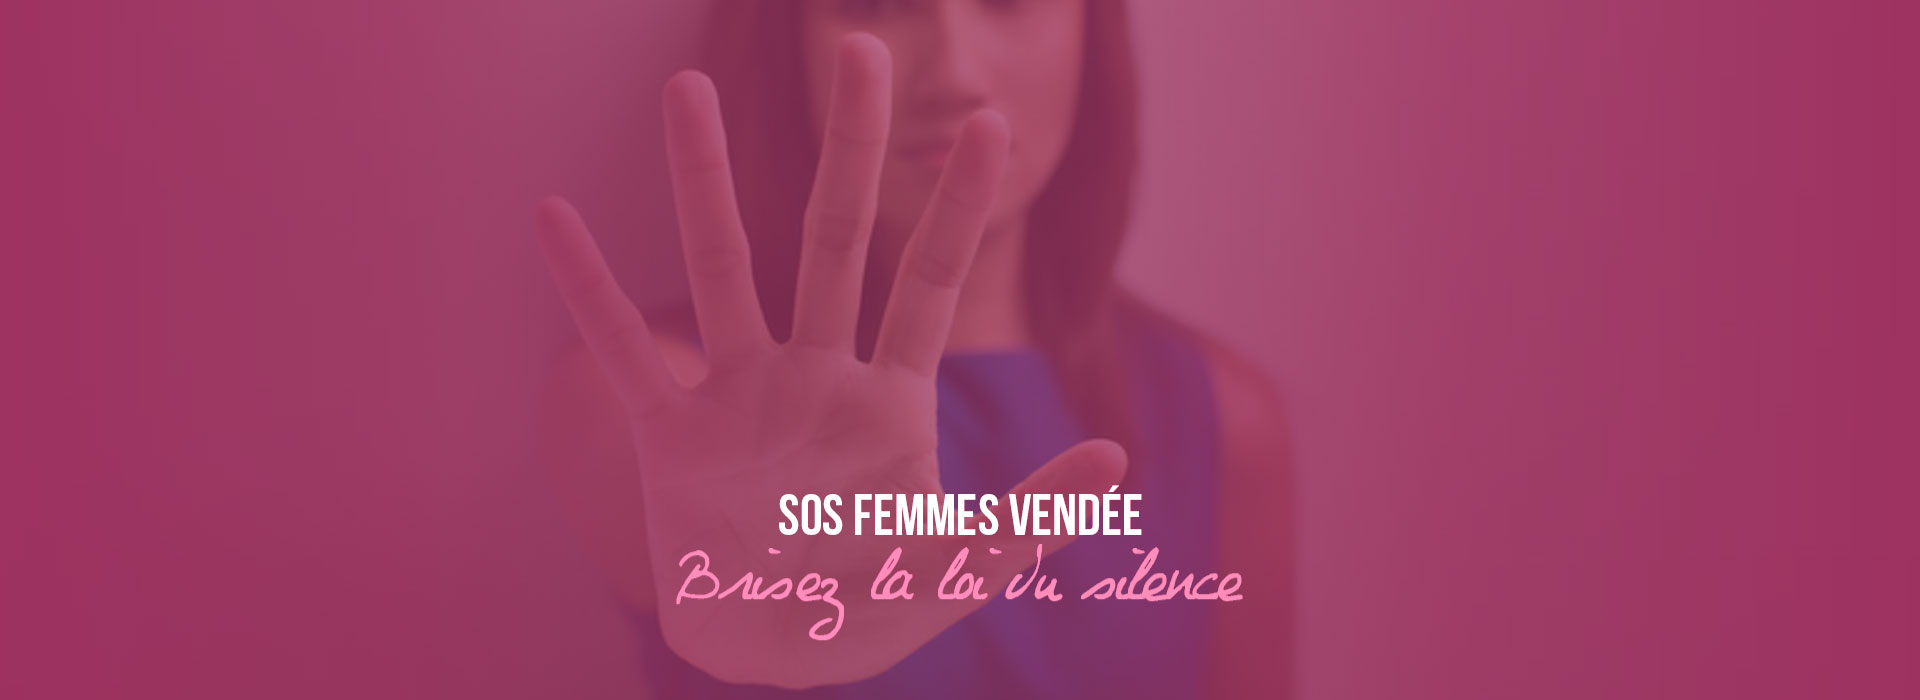 SOS Femmes Vendée